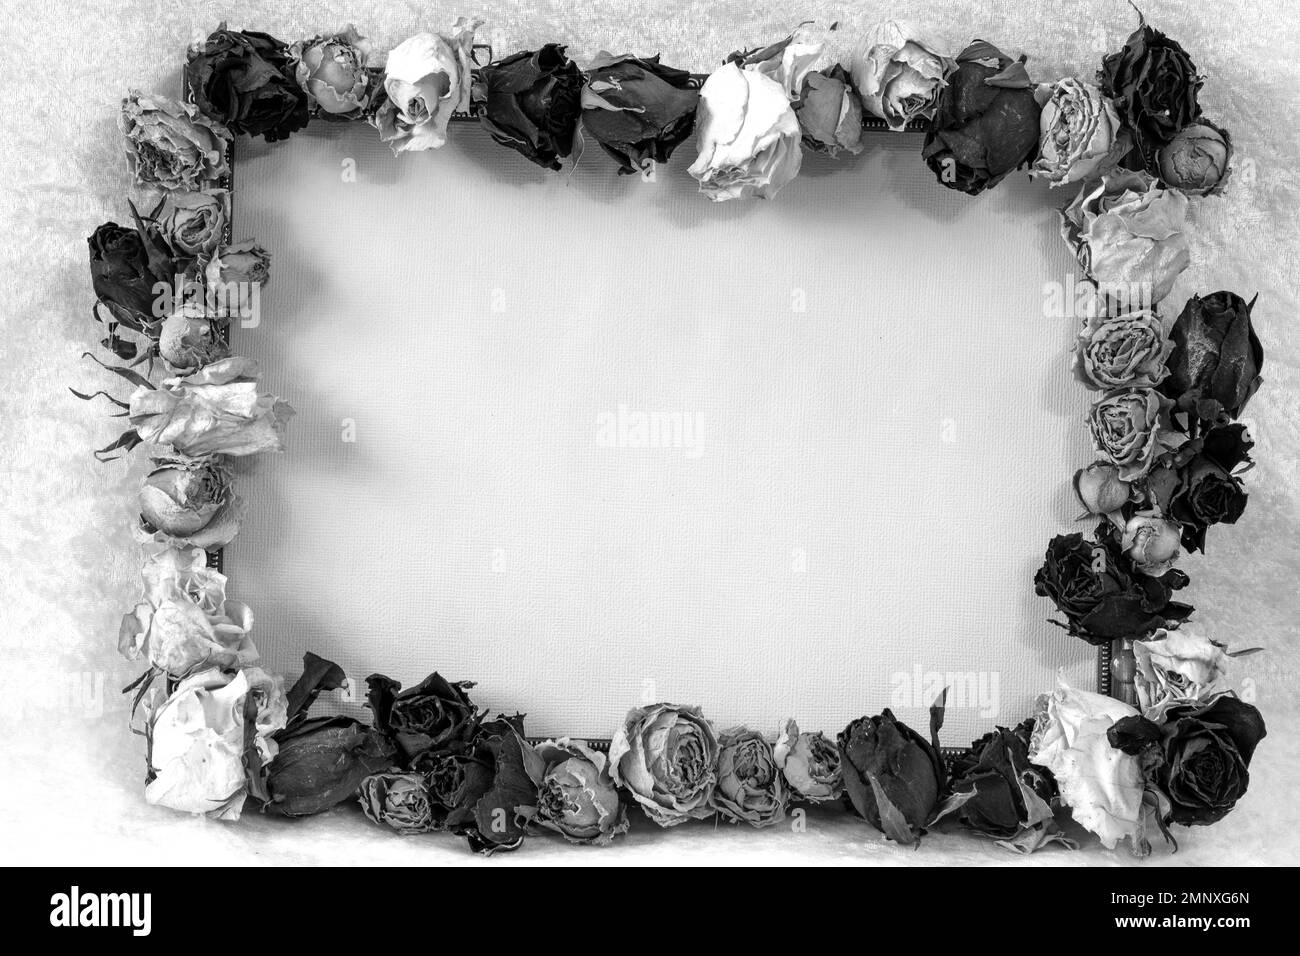 Schwarz-Weiß Stille Leben mit Rosenrahmen, Platz für Text, verschwommener Hintergrund, Urlaubskonzept, alles gute zum valentinstag Stockfoto